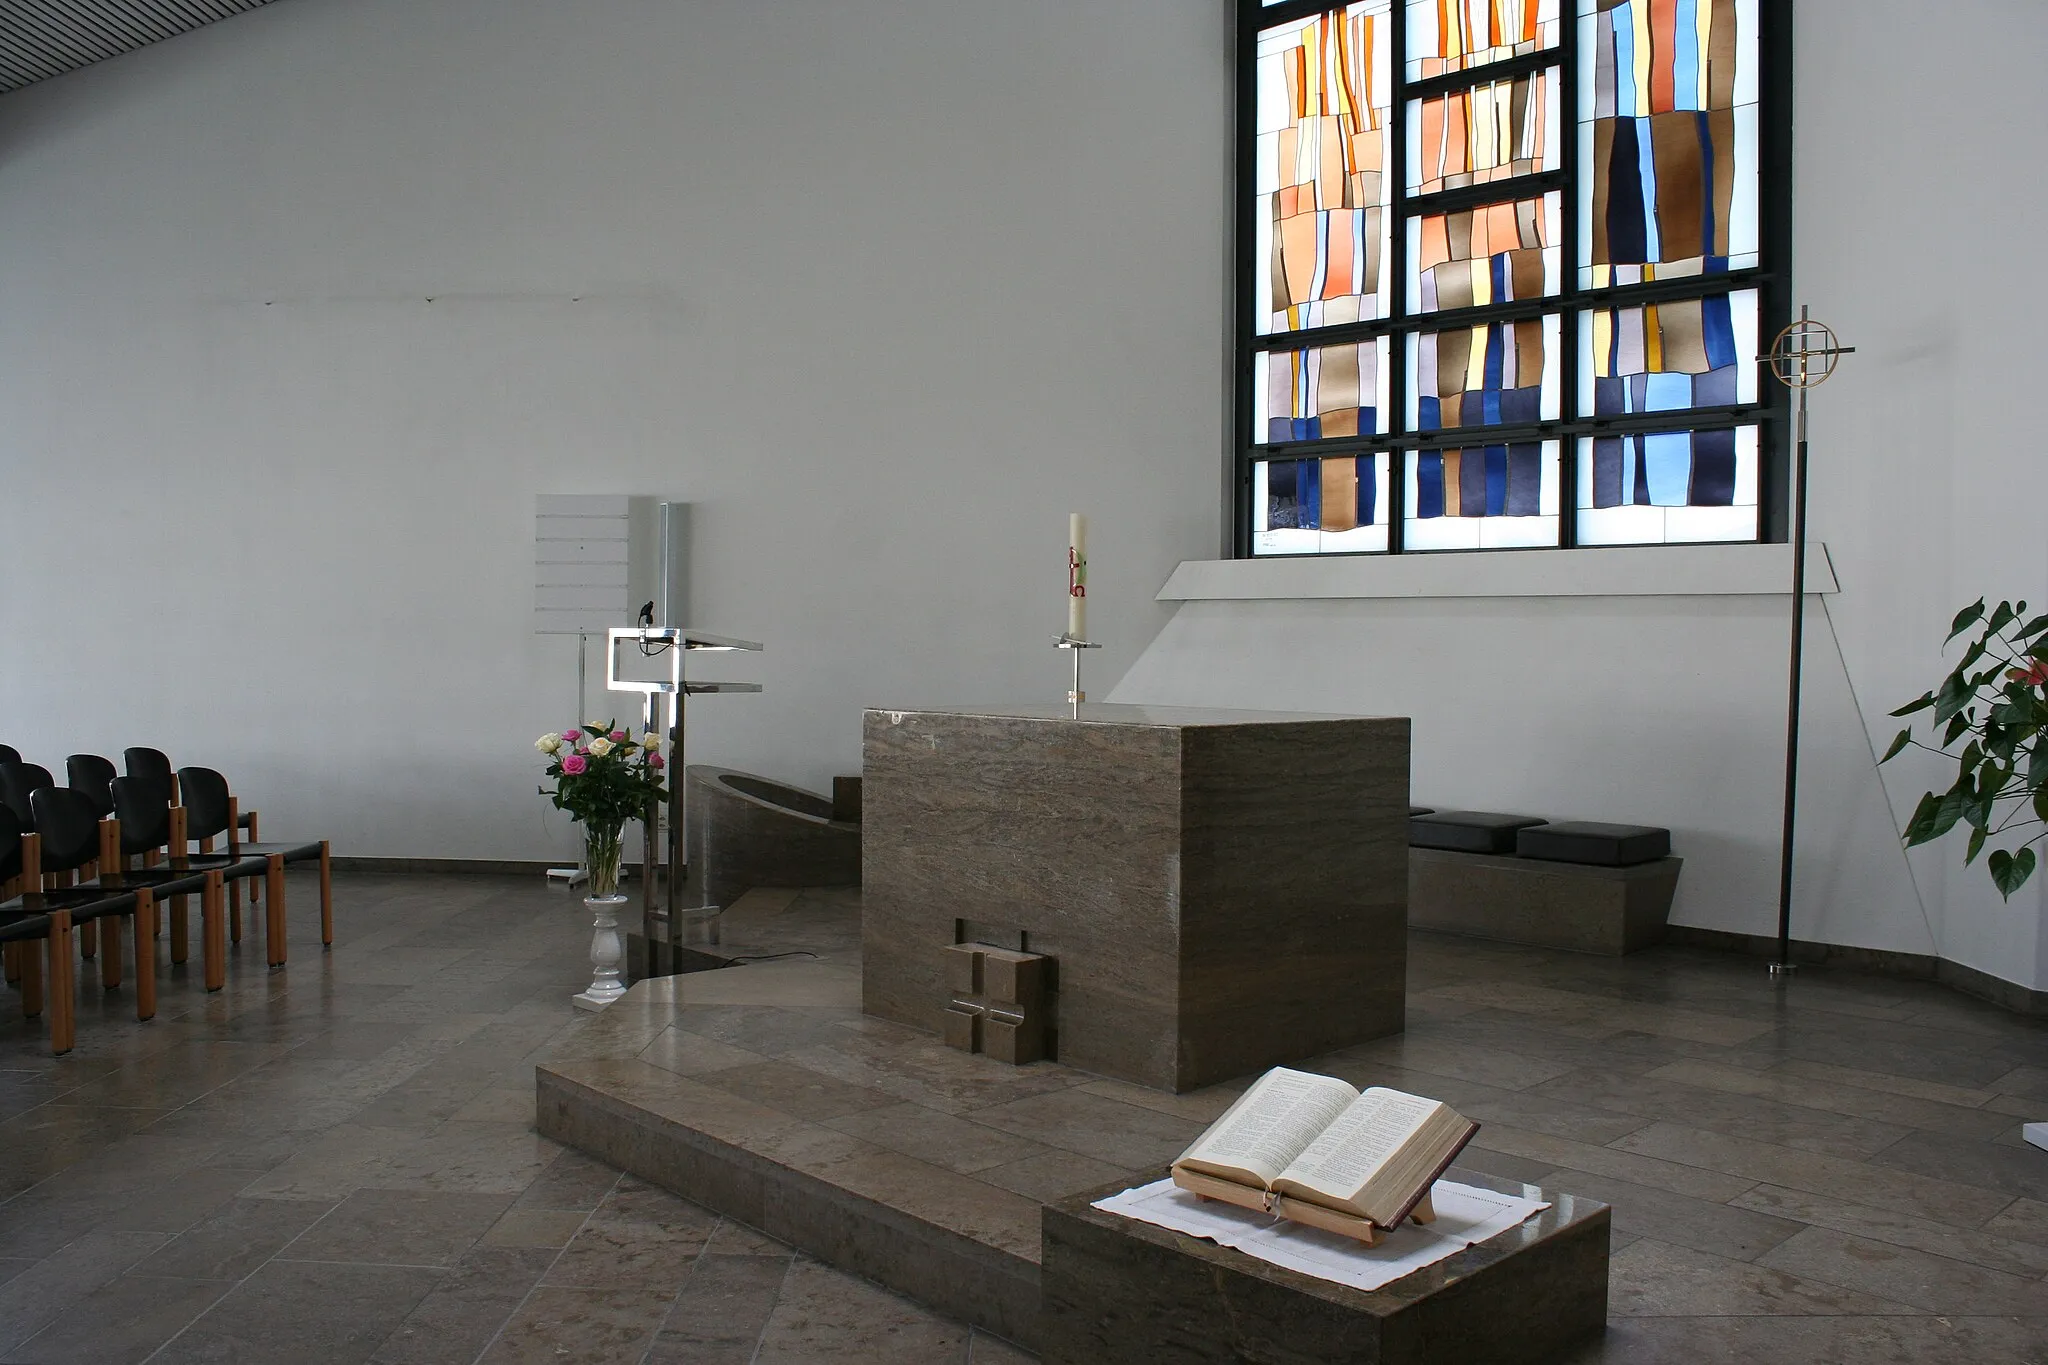 Photo showing: Römisch-katholische Kirche St. Franziskus Maur-Ebmatingen, Gestaltung von Georg Malin, Glasfenster von Fra Roberto Pasotti